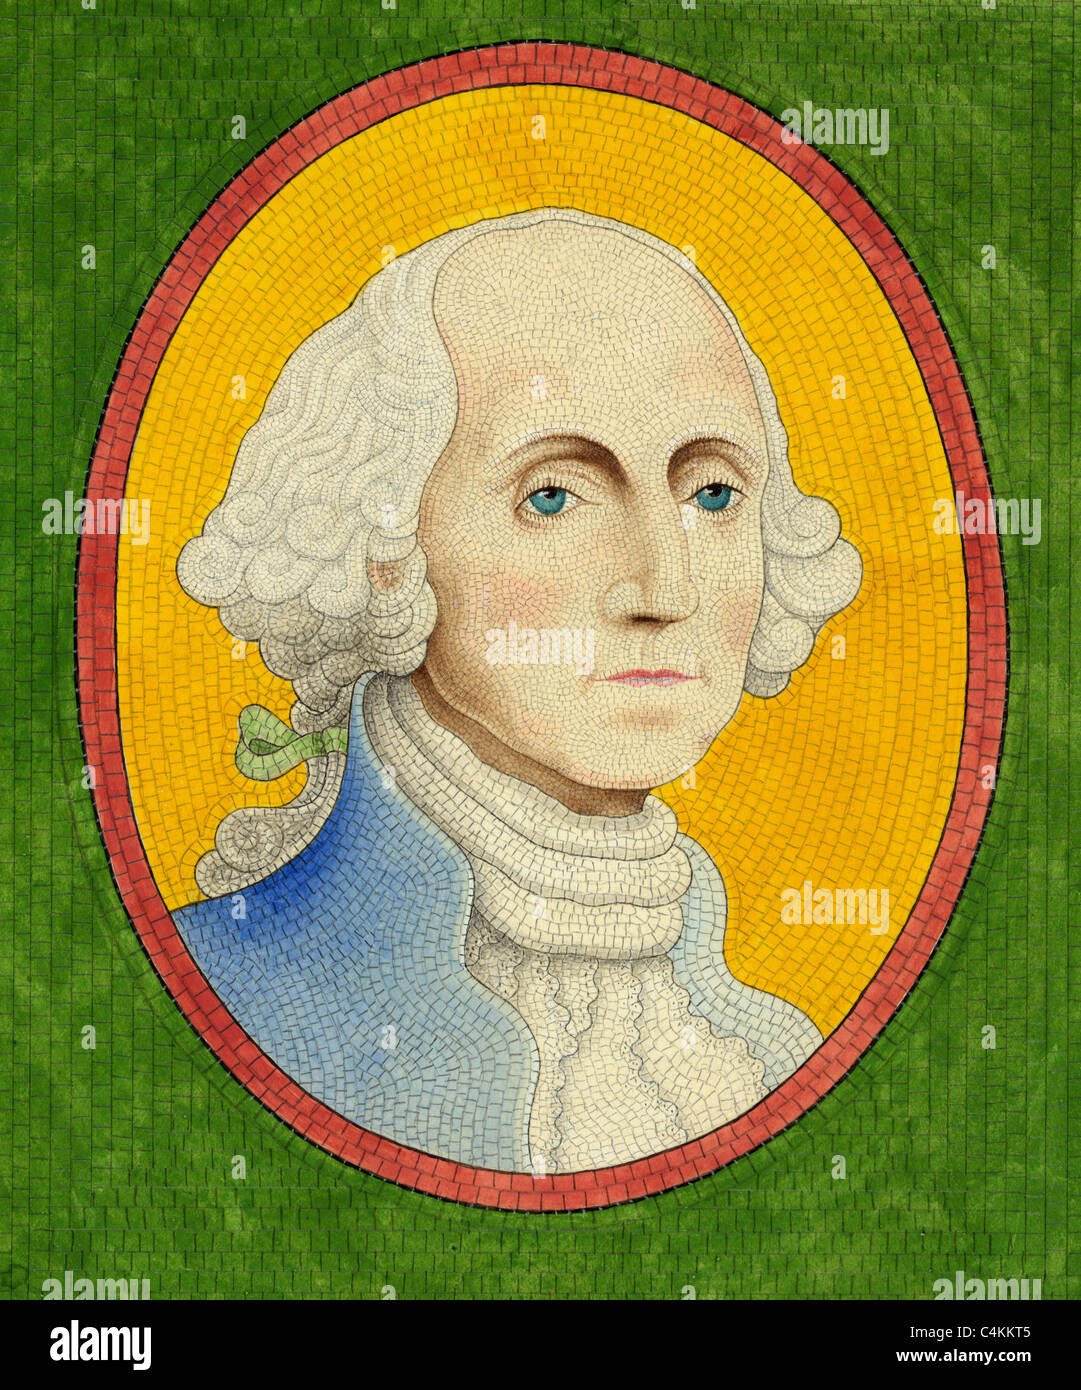 Portrait buste du président des États-Unis, George Washington comme un homme plus âgé Banque D'Images